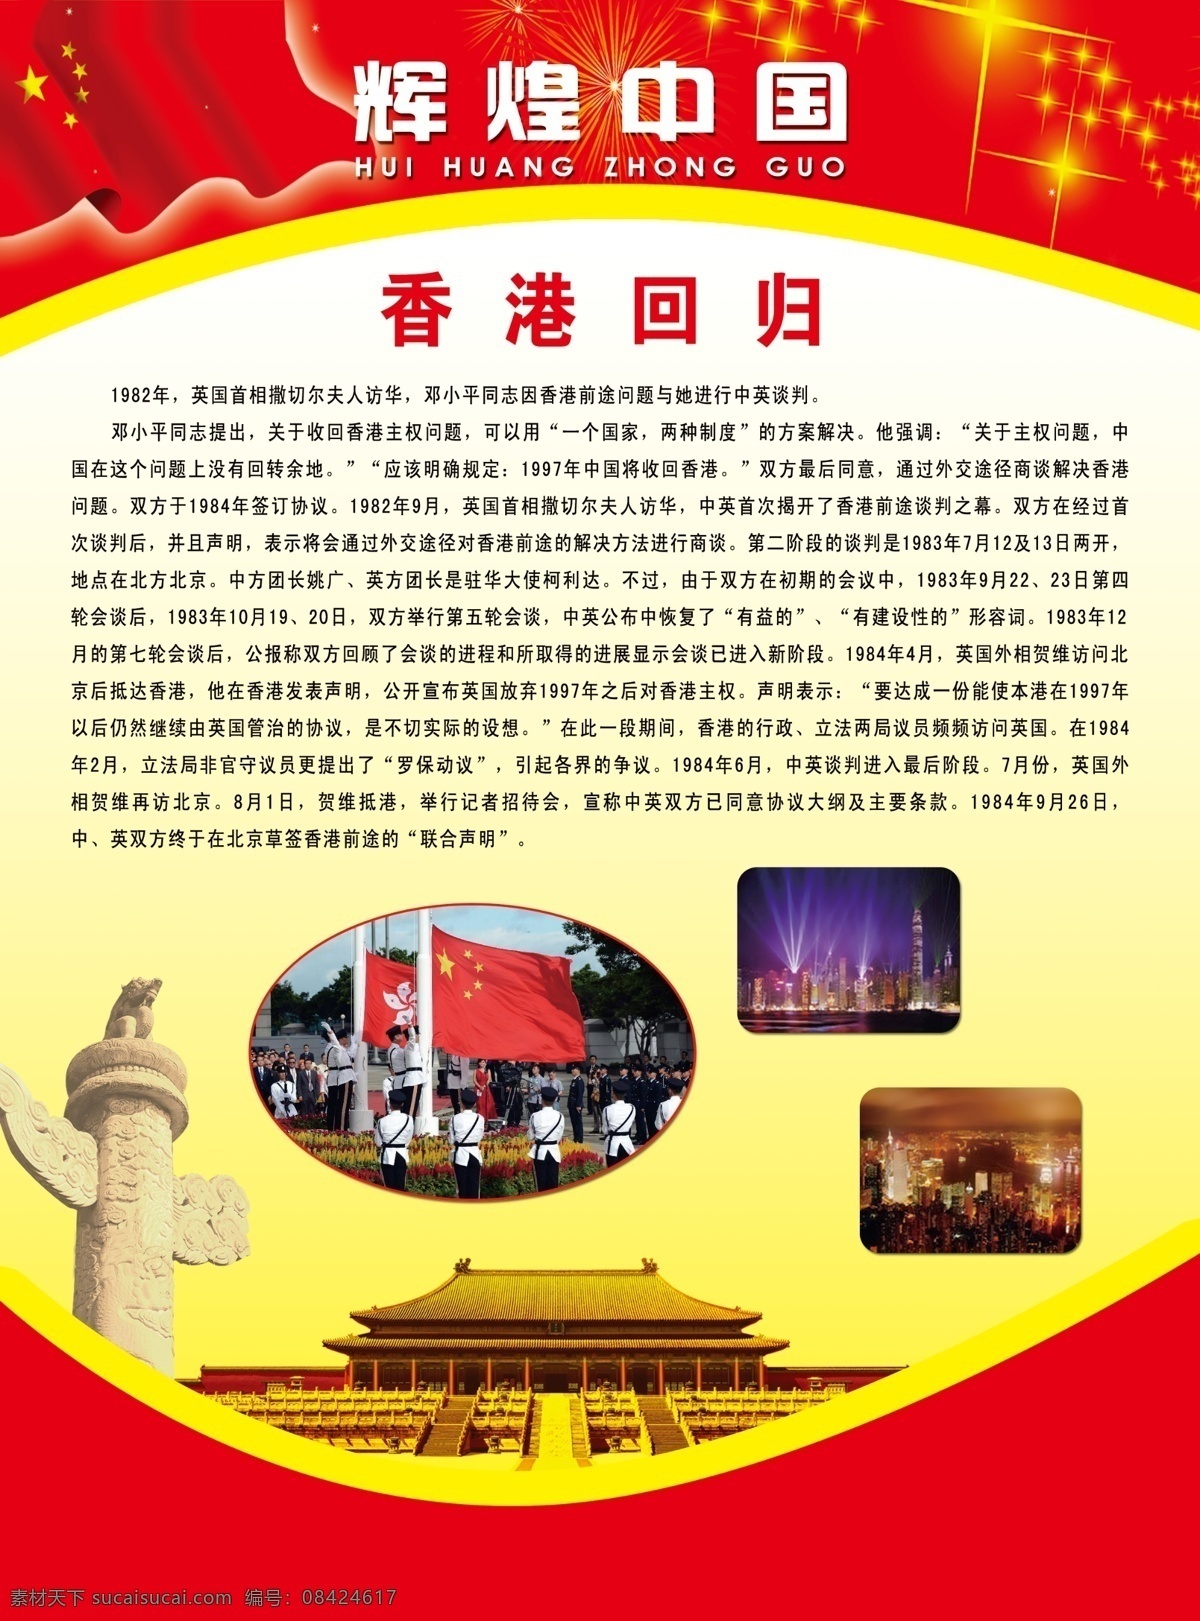 辉煌中国 香港回归 国旗 星星 人民大会堂 颗 人造卫星 学校用品 挂图 分层 源文件